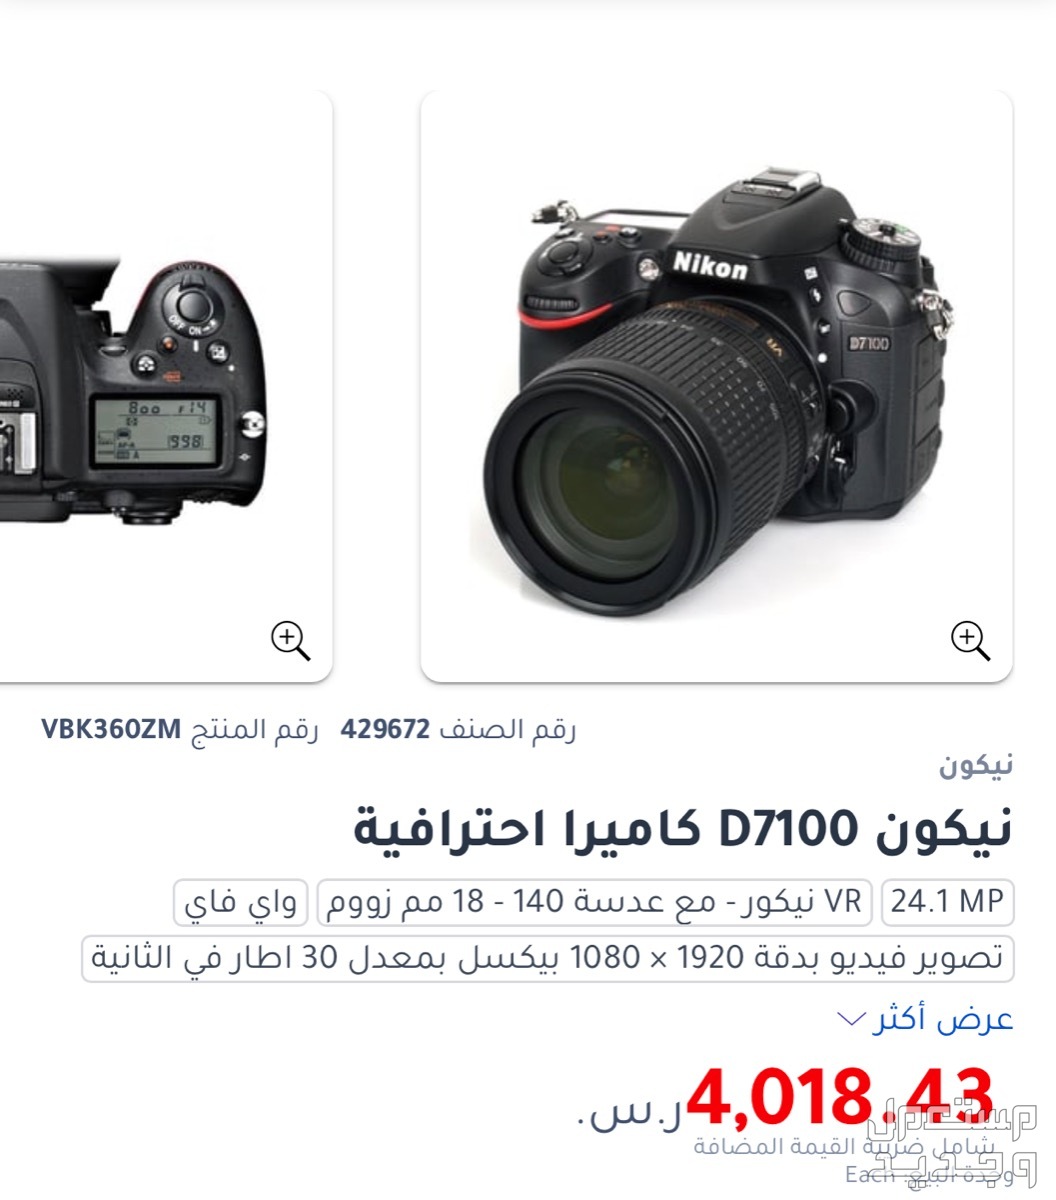 كاميرا نيكون 7100D مكة في مكة المكرمة بسعر 2500 ريال سعودي